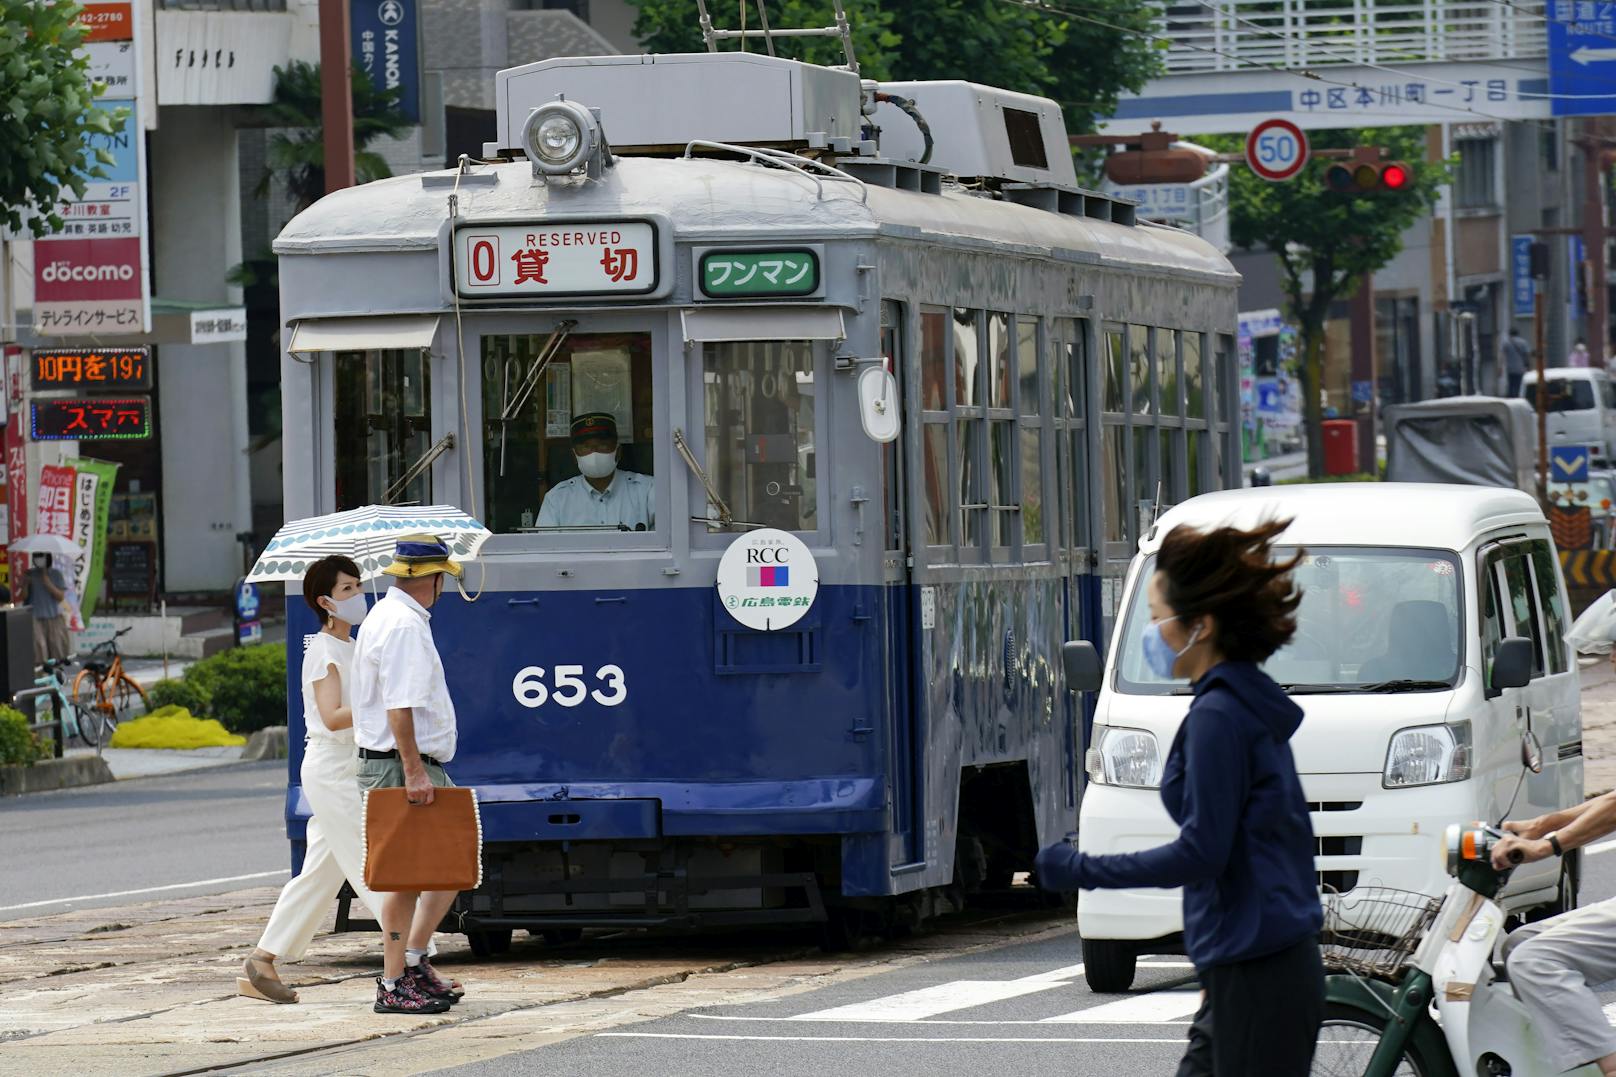 Straßenbahn No. 653 überdauerte den Abwurf der Atombombe. Sie fuhr zum Gedenken an die rund 140’000 Menschen, die getötet wurden, durch die Straßen Hiroshimas.&nbsp;